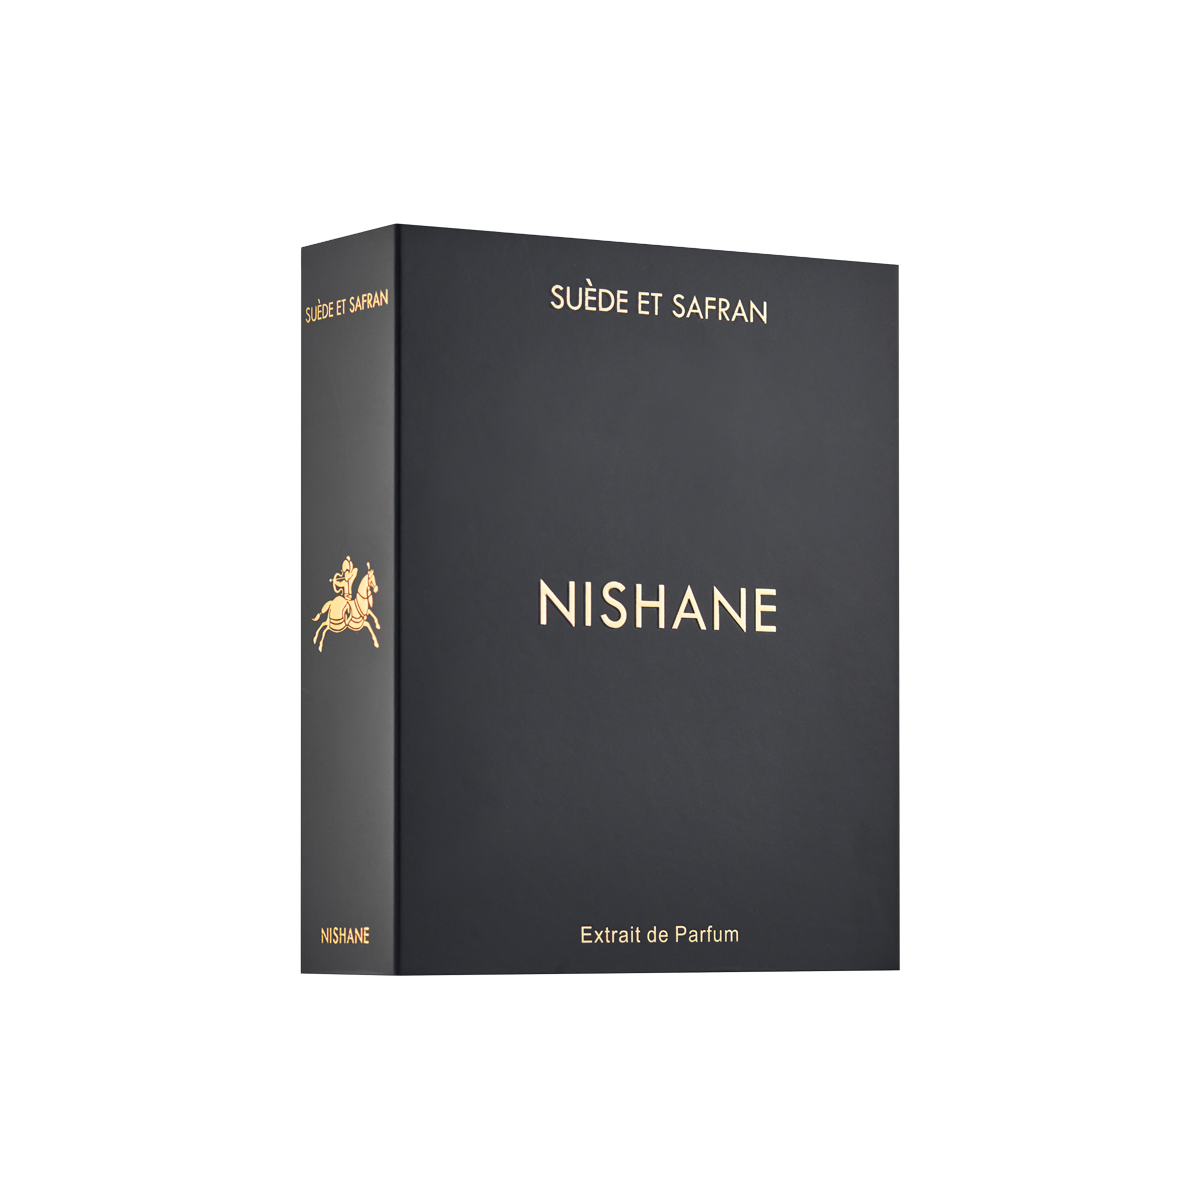 Nishane - Suede Et Safran Extrait de Parfum